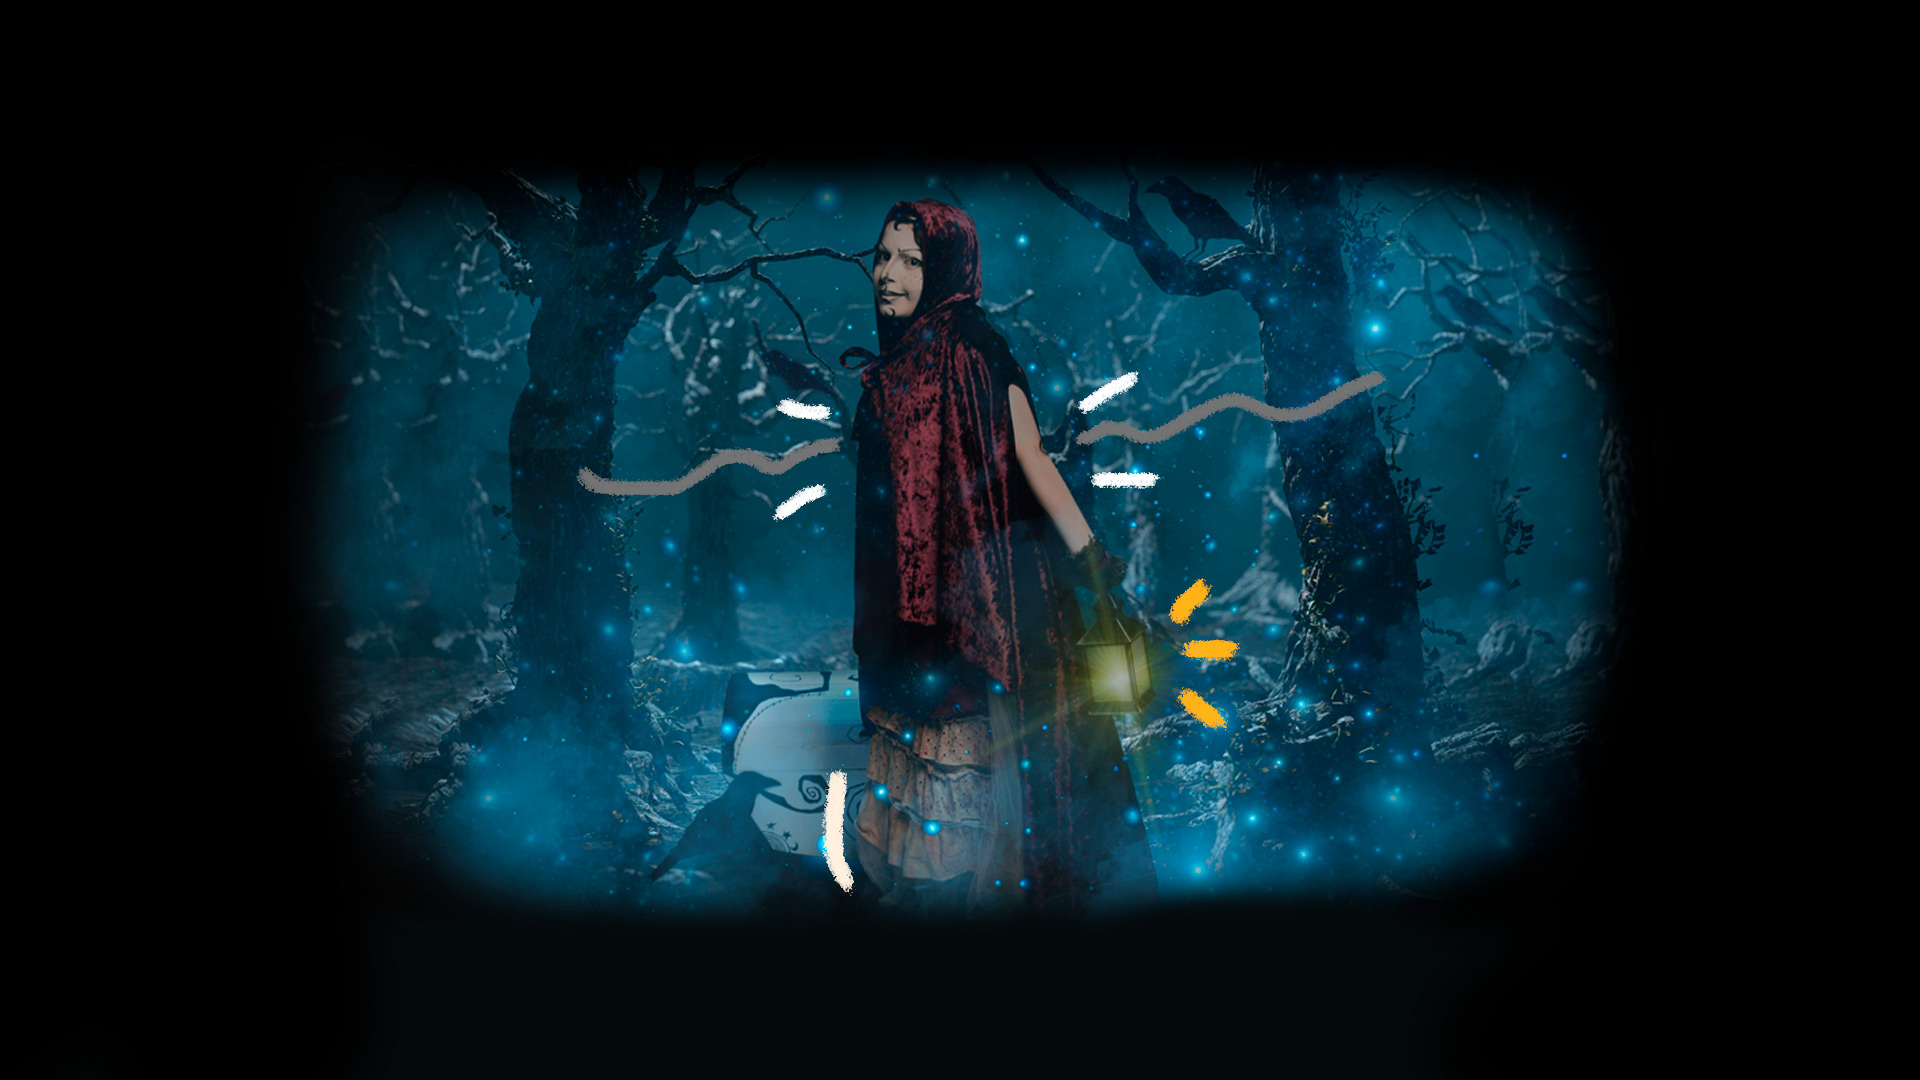 Mulher com roupa escura de veludo segura um lampião. Ela anda em uma floresta cenográfica durante a noite.